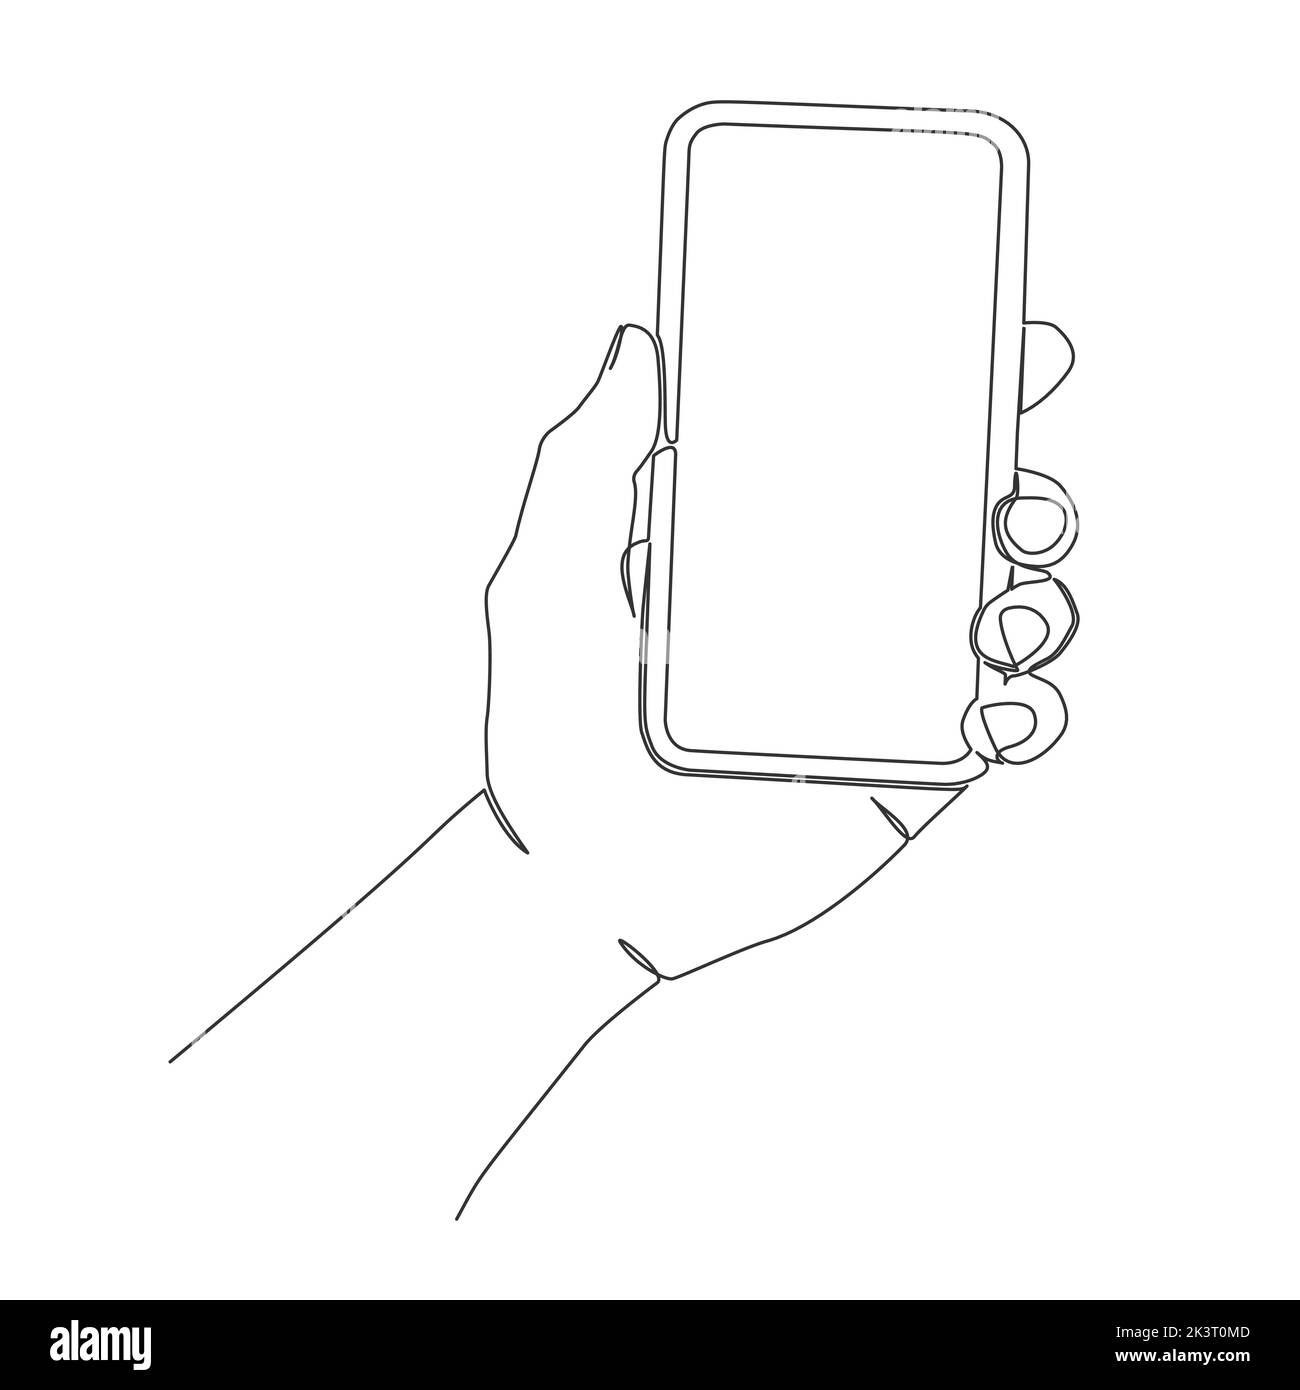 dibujo de una sola línea del teléfono inteligente de mano aislado sobre fondo blanco, ilustración vectorial de arte lineal Ilustración del Vector